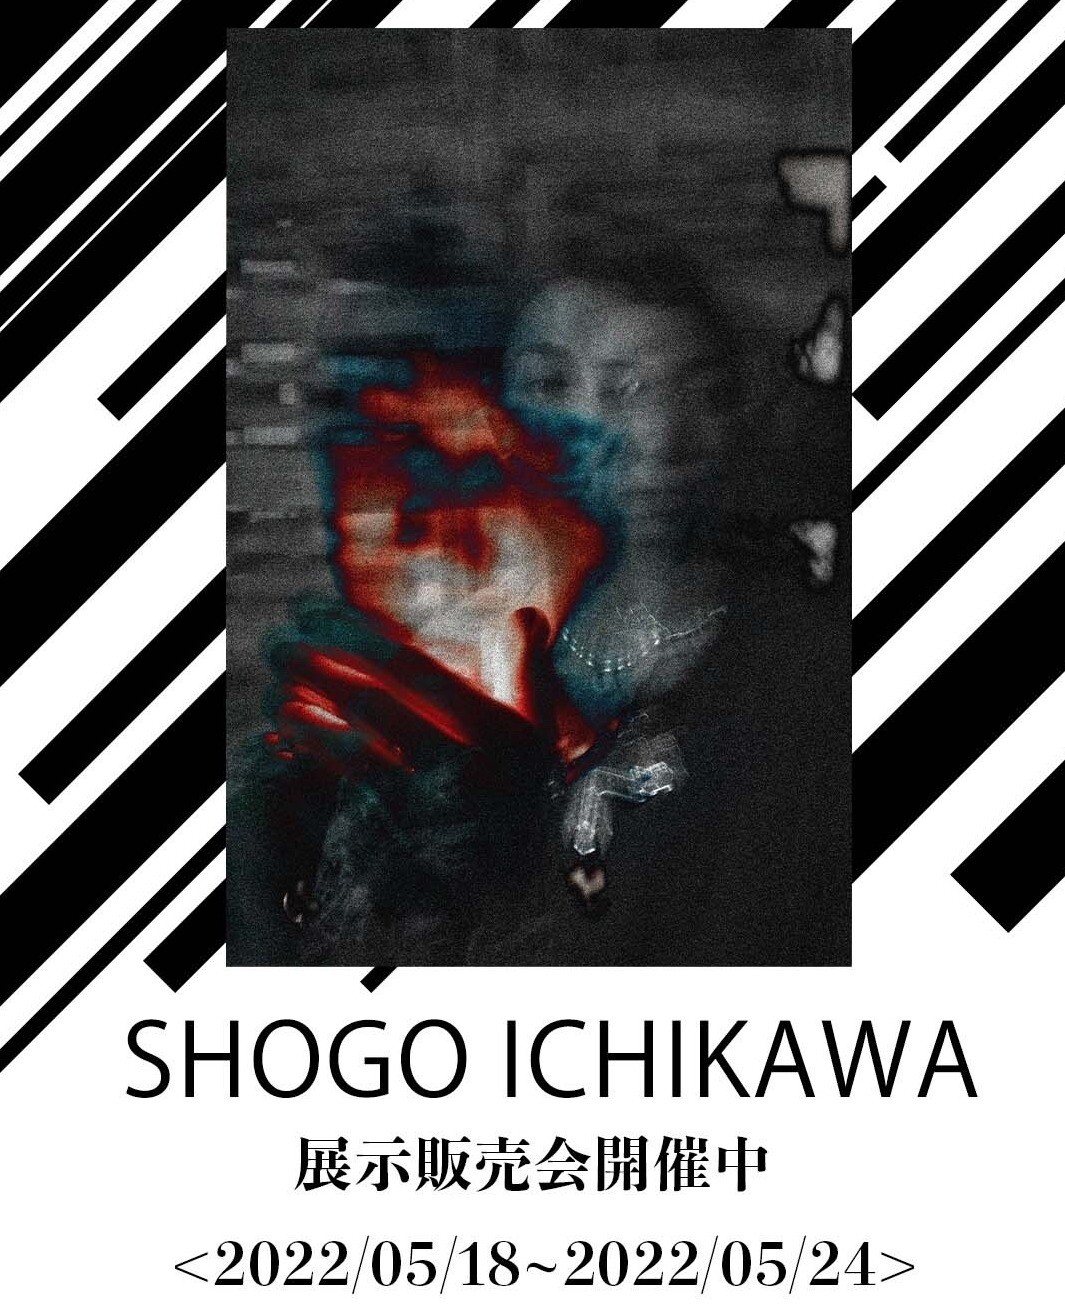 SHOGO ICHIKAWA  SOLO EXHIBITION